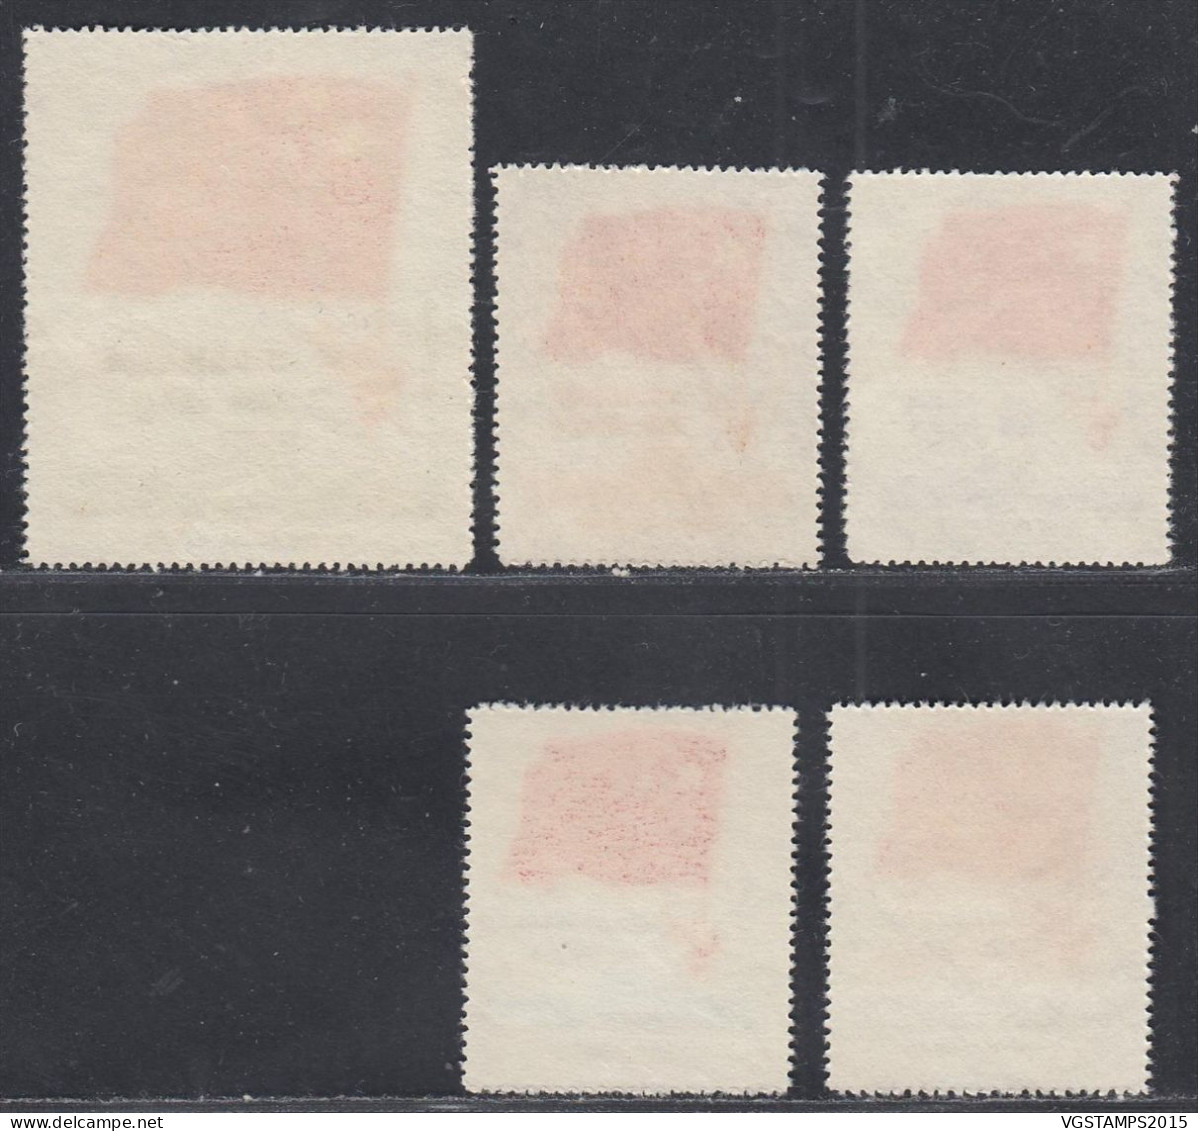 Chine 1950 (Nord Est)  -Tmbres Neufs émis Sans Gomme. Yvert Nr.: 149/153.  Michel Nr.: 179/183...... (VG) DC-12581 - Unused Stamps